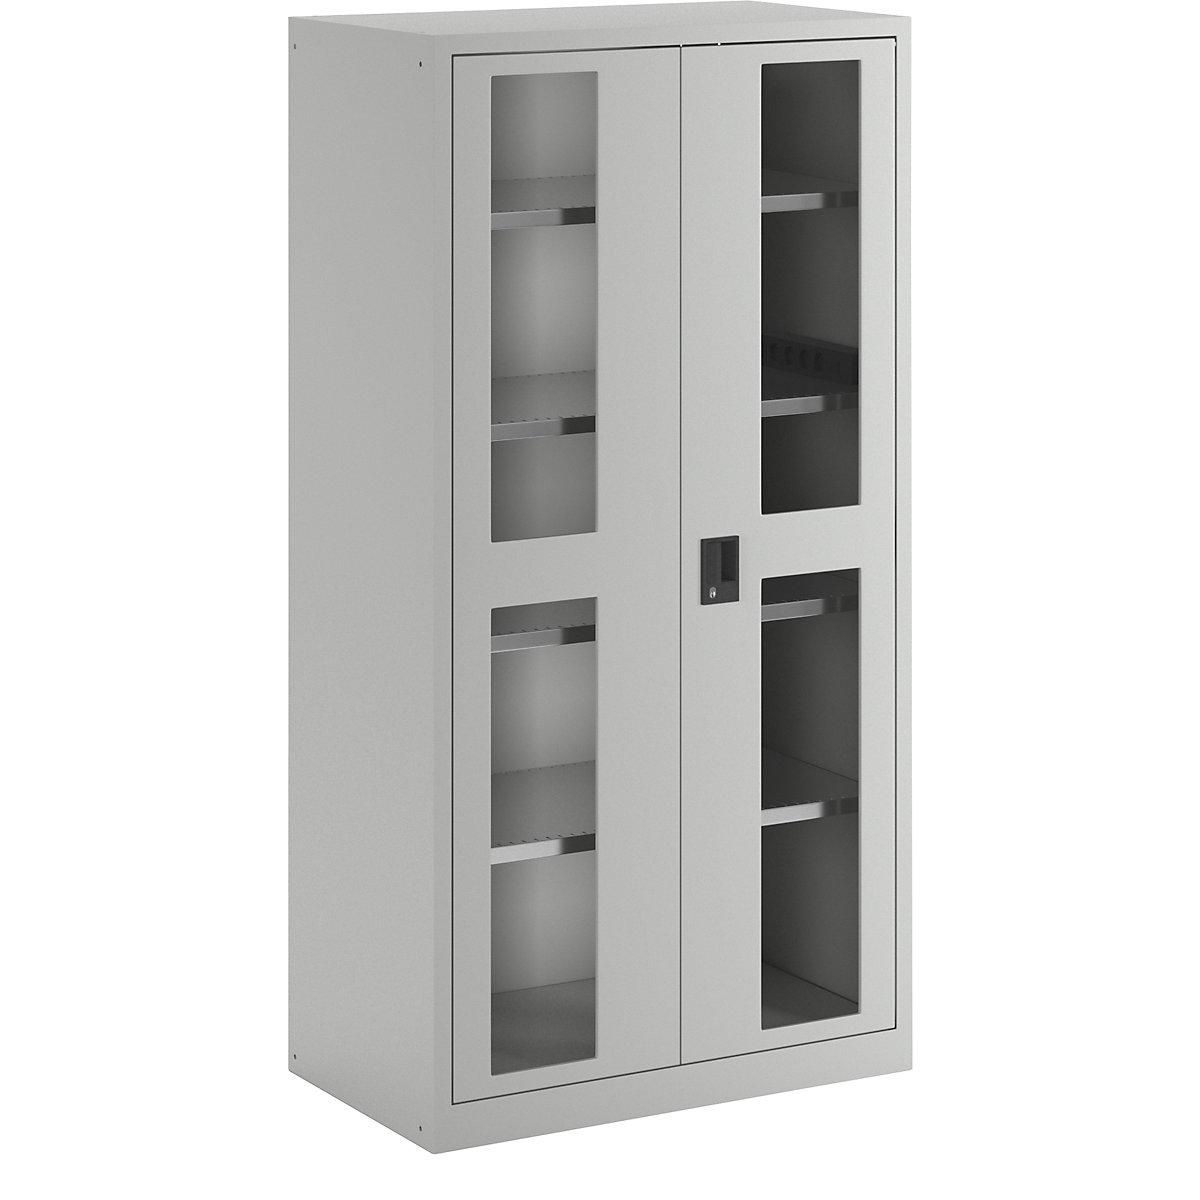 Skříň pro nabíjení akumulátorů – LISTA, 4 police, dveře s okénkem, boční zásuvková lišta, šedá-16